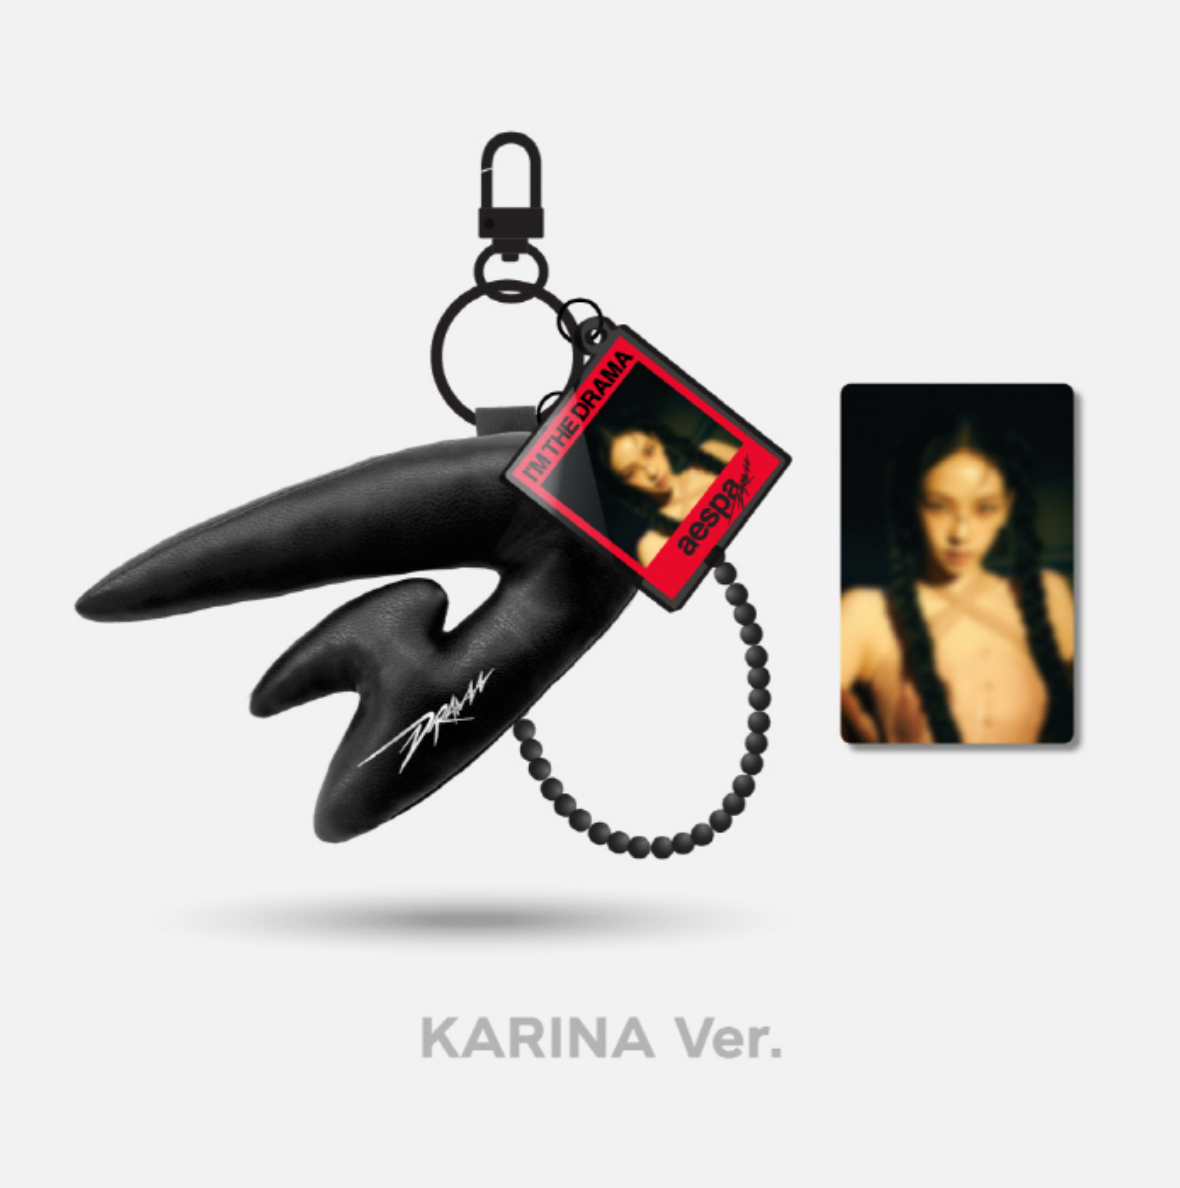 aespa "Drama" (Black) Photo Key Ring